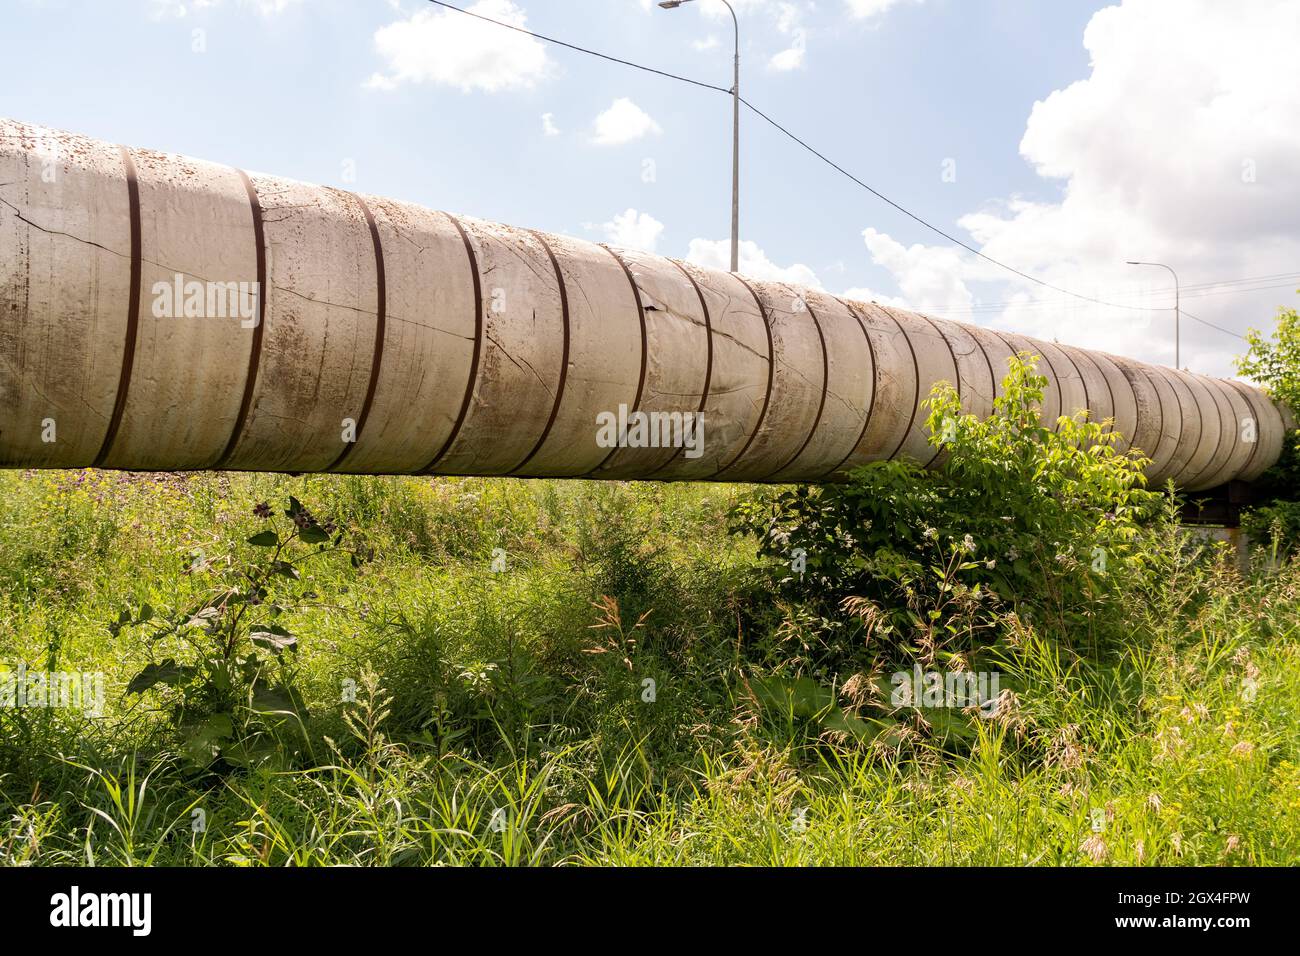 Il pipeline di terra della rete principale di riscaldamento urbano su un supporto in cemento armato tra l'erba in una giornata estiva soleggiata. Foto Stock